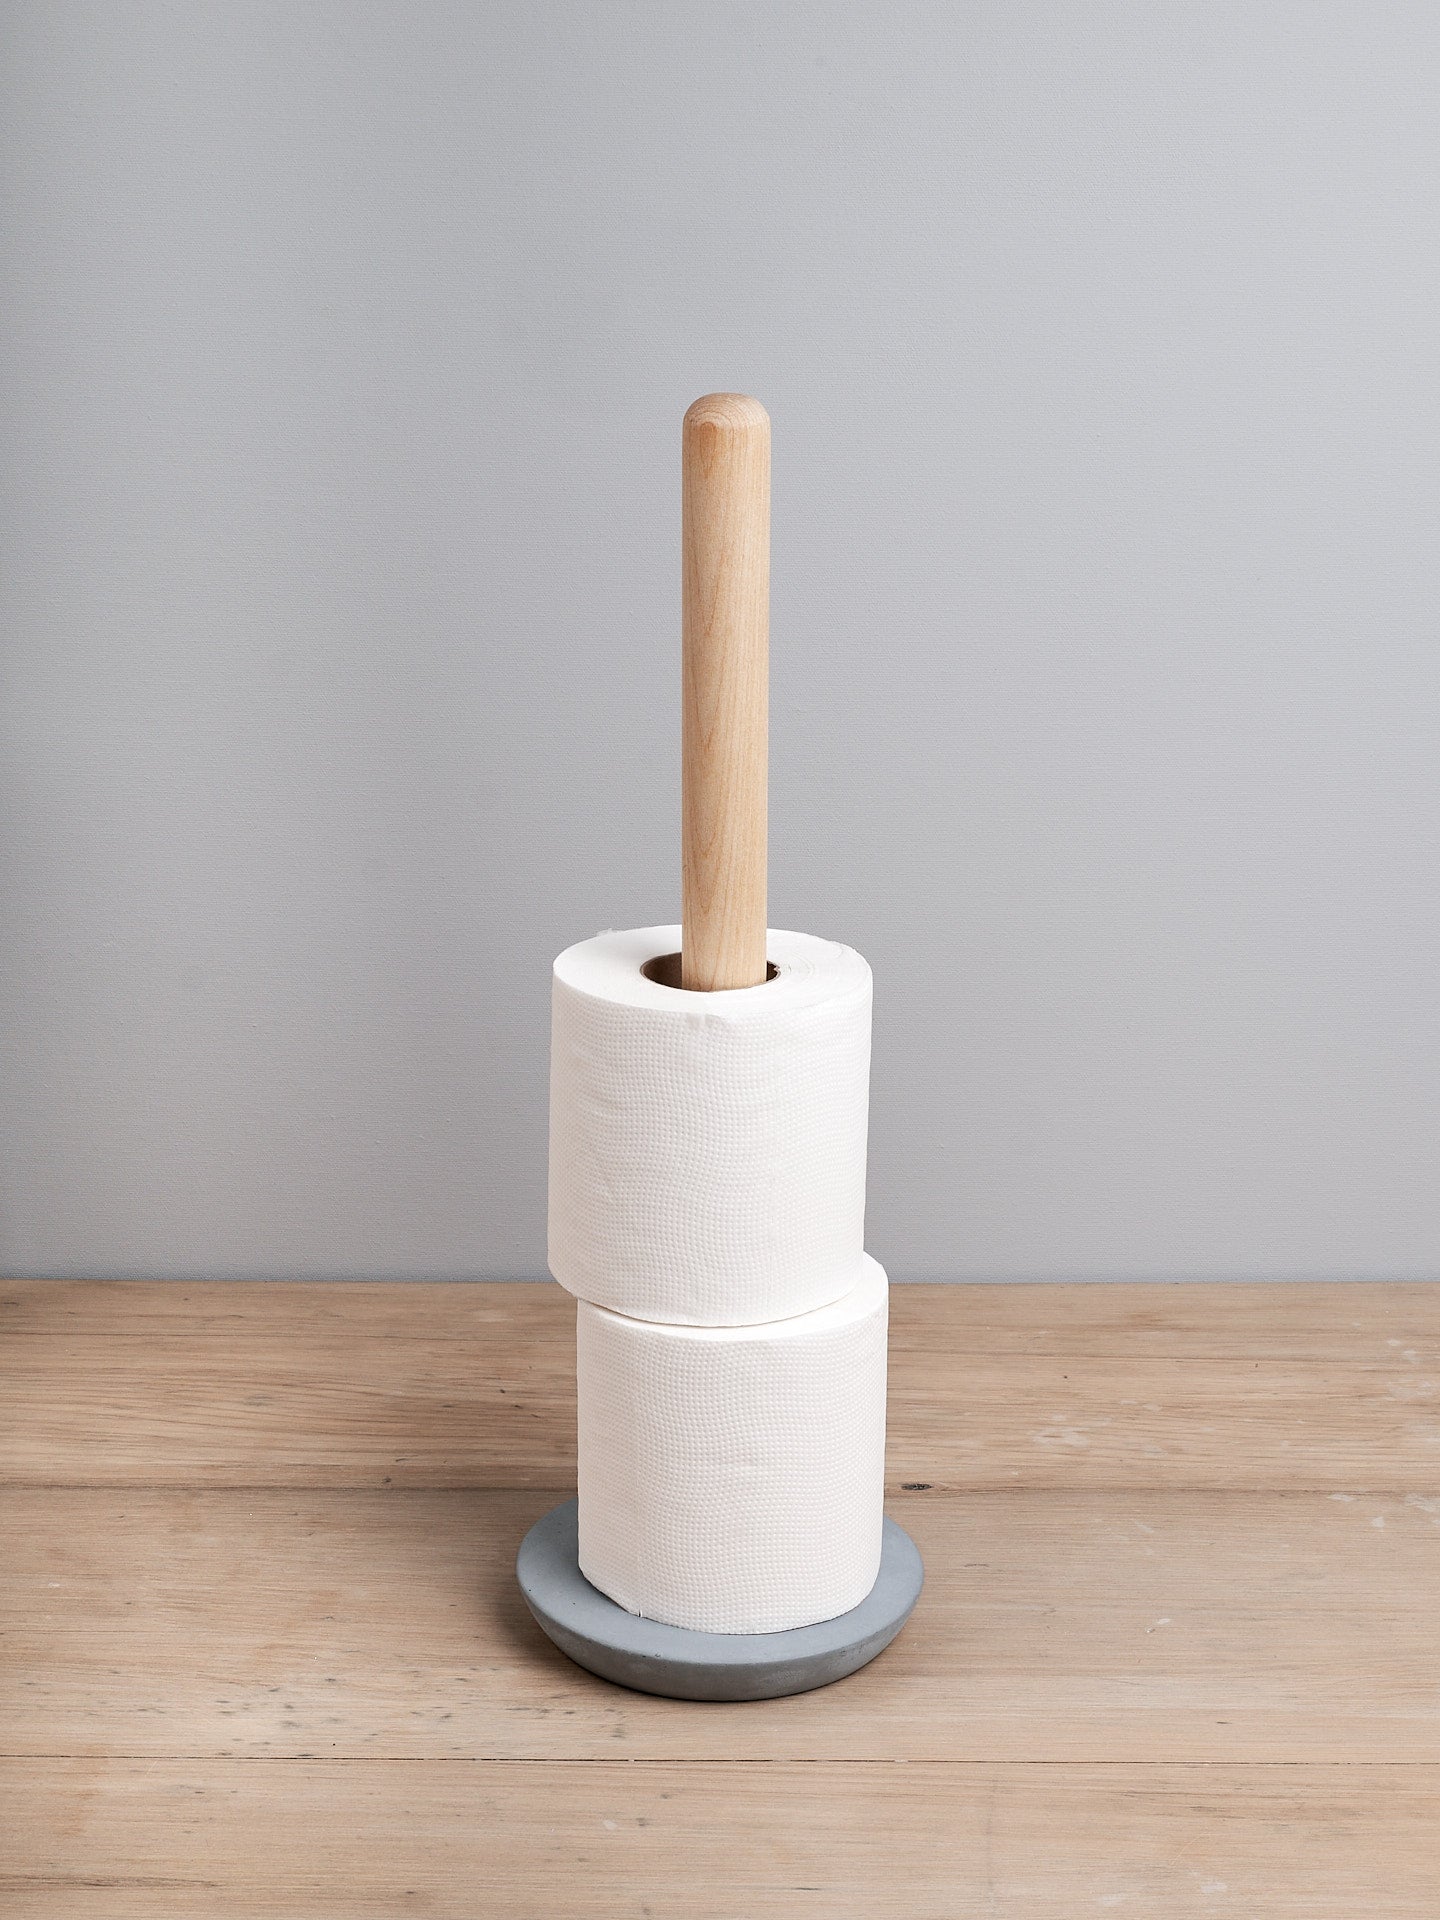 An Iris Hantverk toilet roll holder with a wooden base.